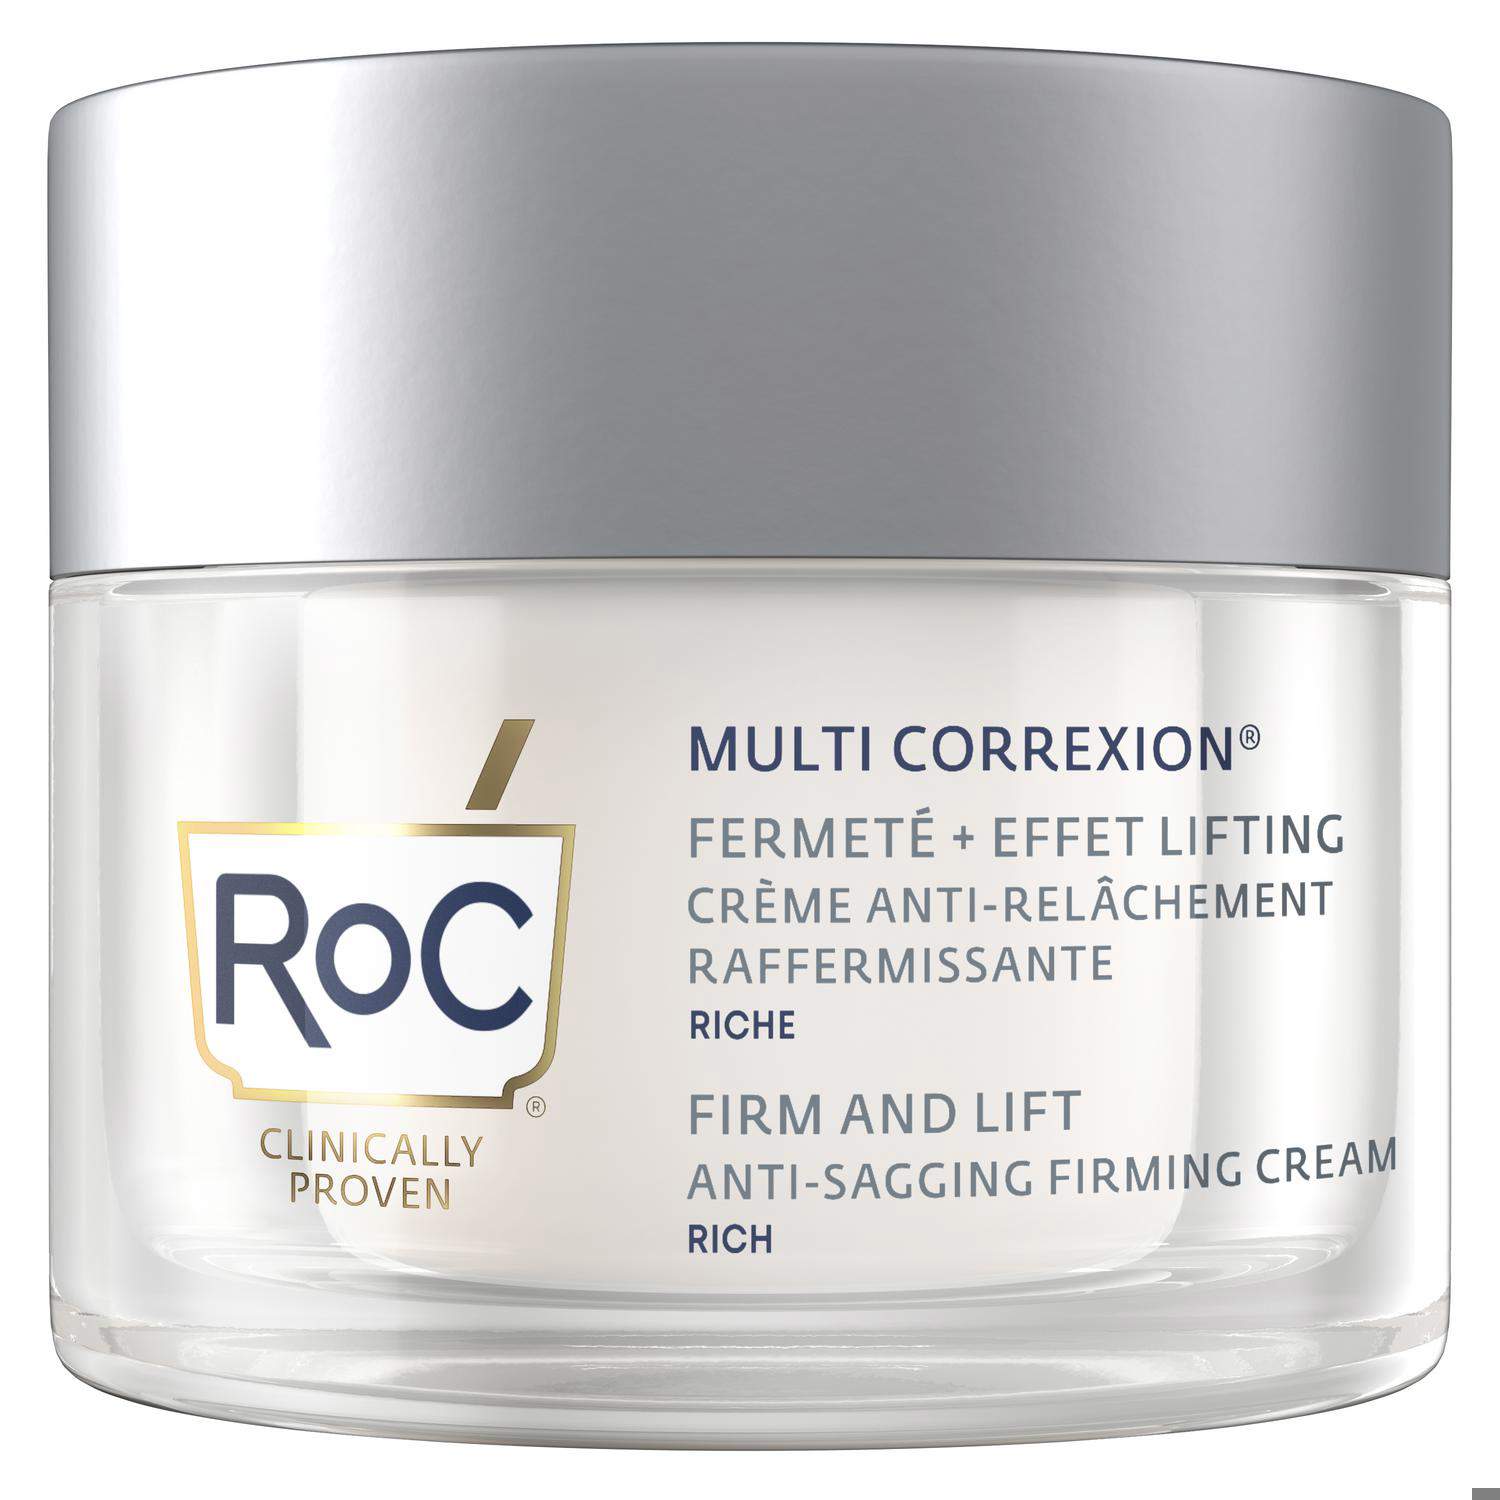 Crema facial reafirmante anti-flacidez Firm + Lift Multi Correxion RoC 50 ml. – 34,10€